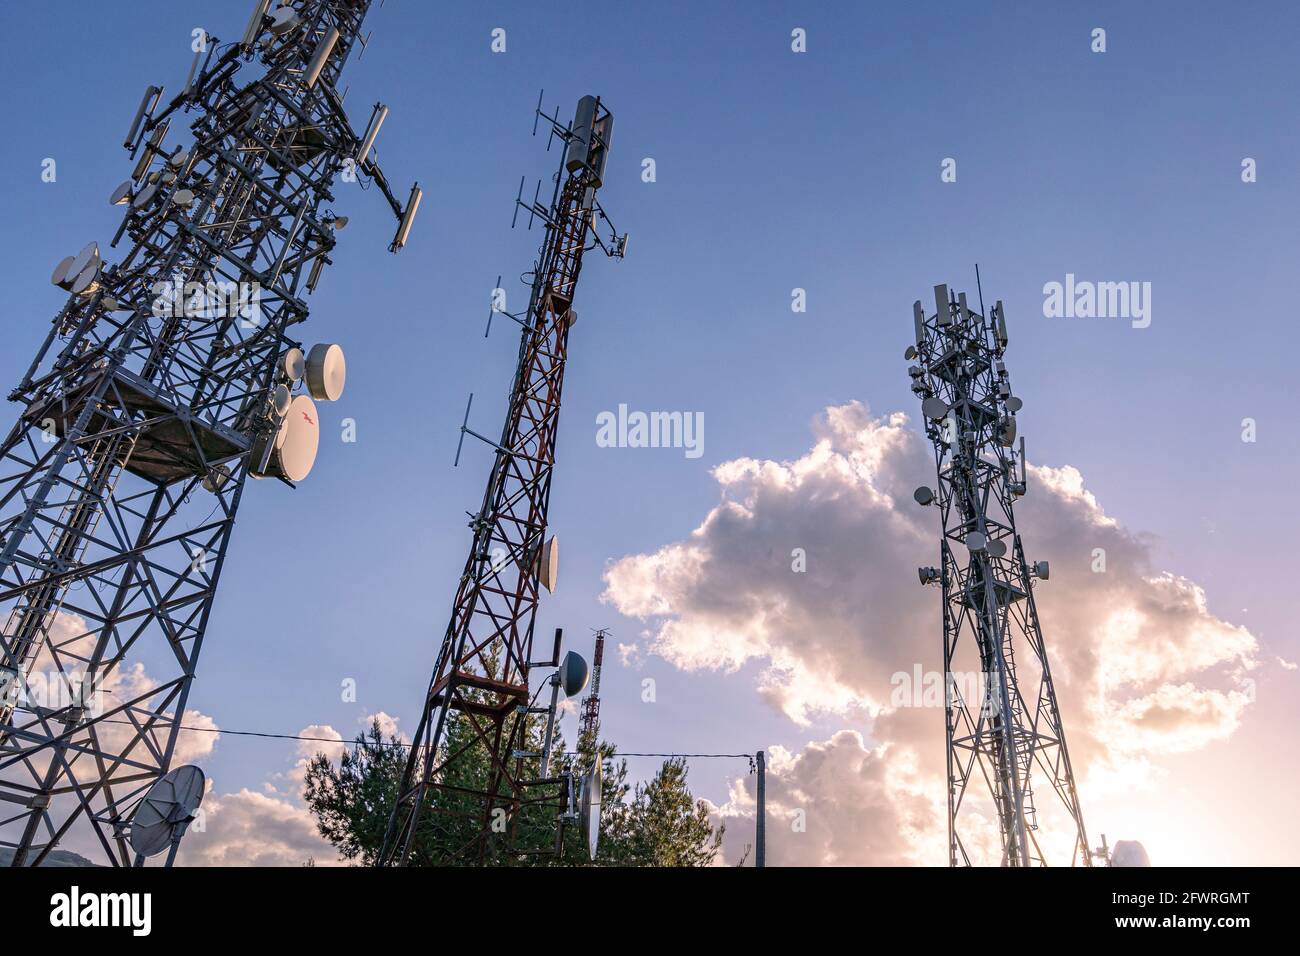 Trois antennes de communication par satellite, cellulaire ou télévisée se démarquent dans le ciel avec un nuage illuminé par le soleil couchant. Abruzzes, Italie, Europ Banque D'Images